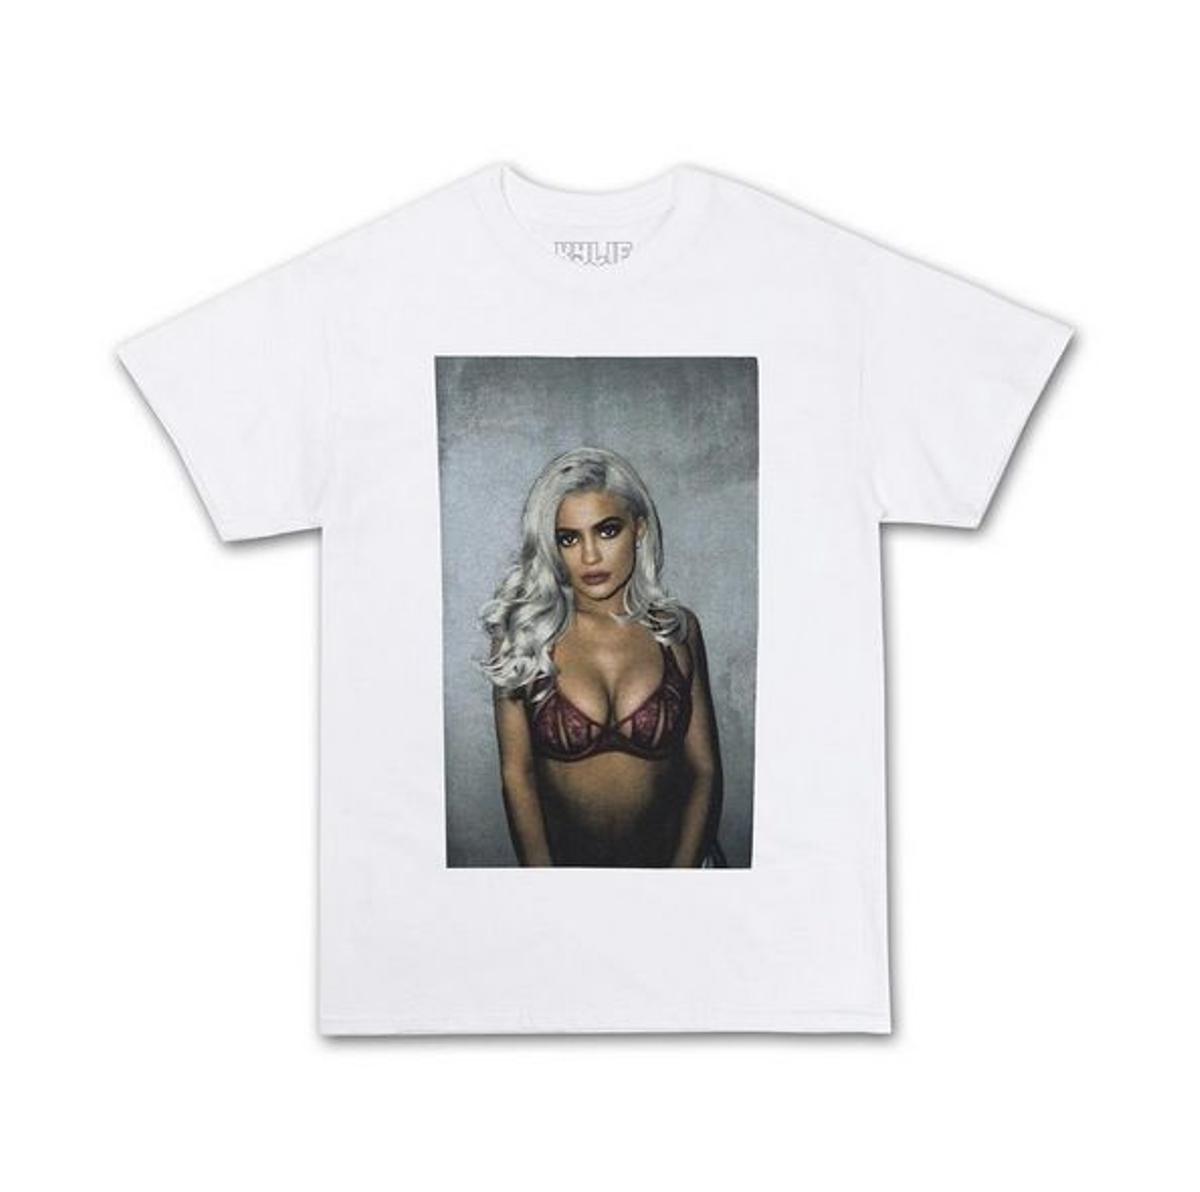 The Kylie Shop: camiseta blanca